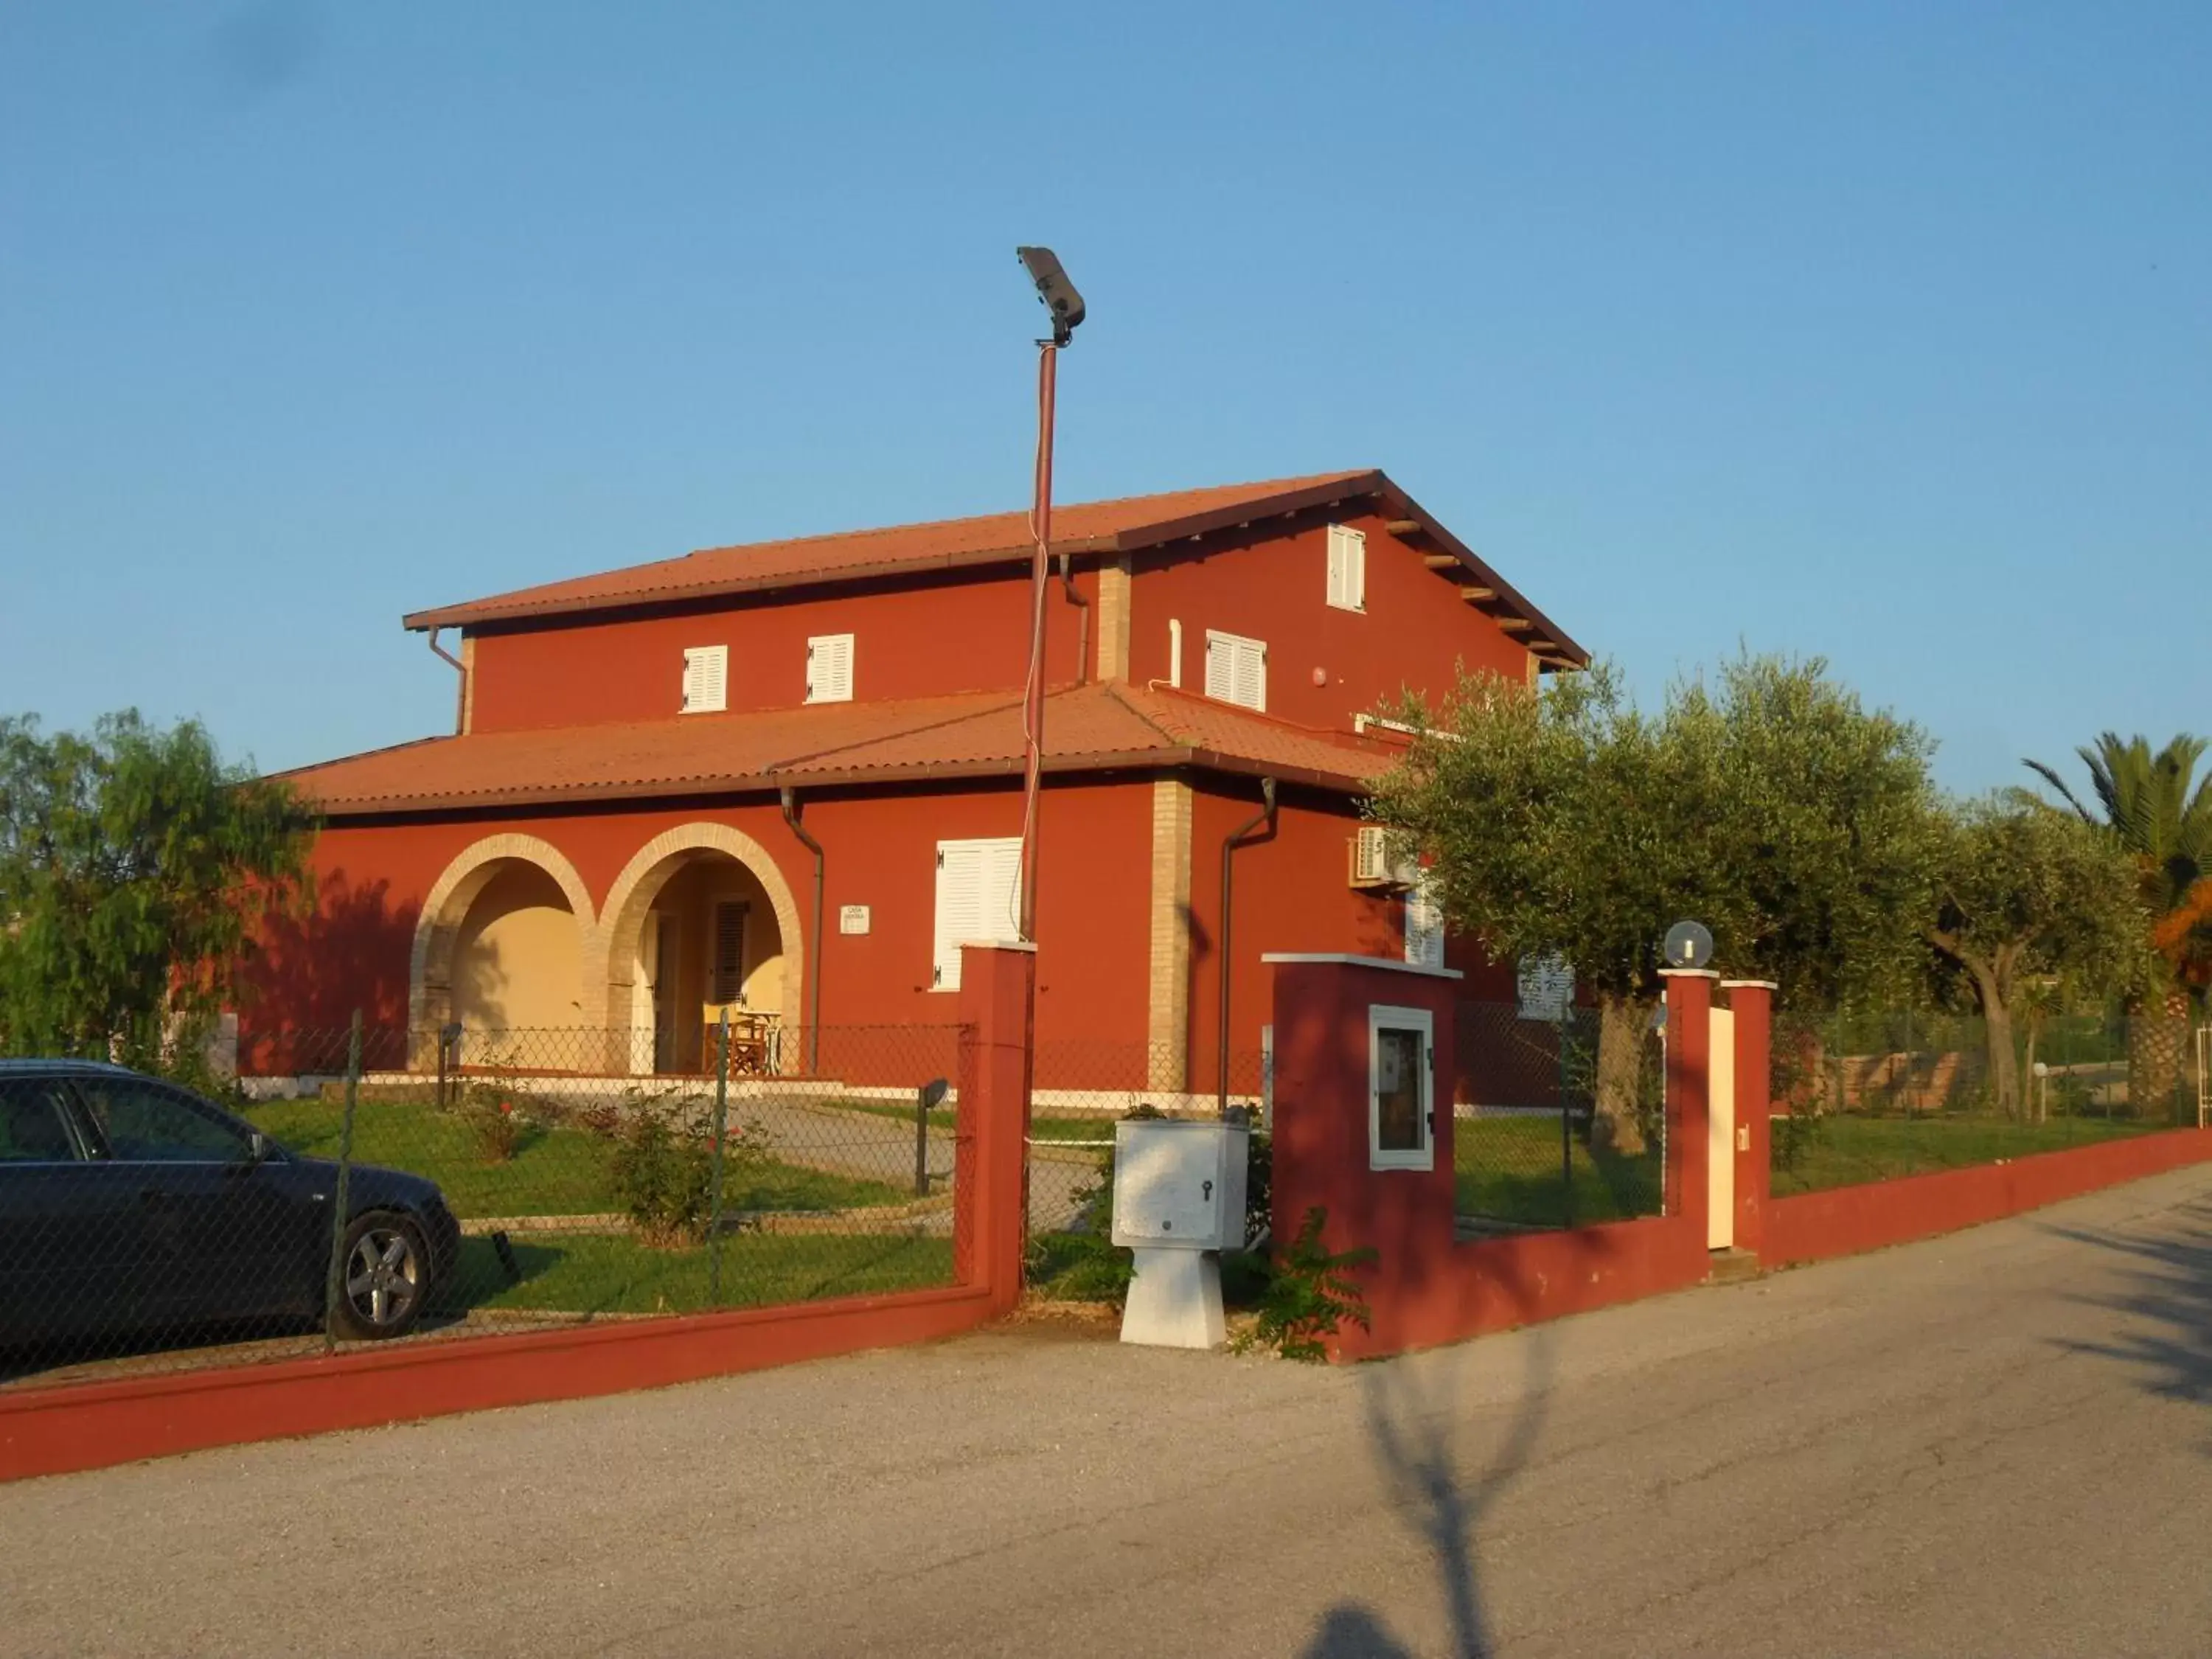 Decorative detail, Property Building in Fattoria Cerreto